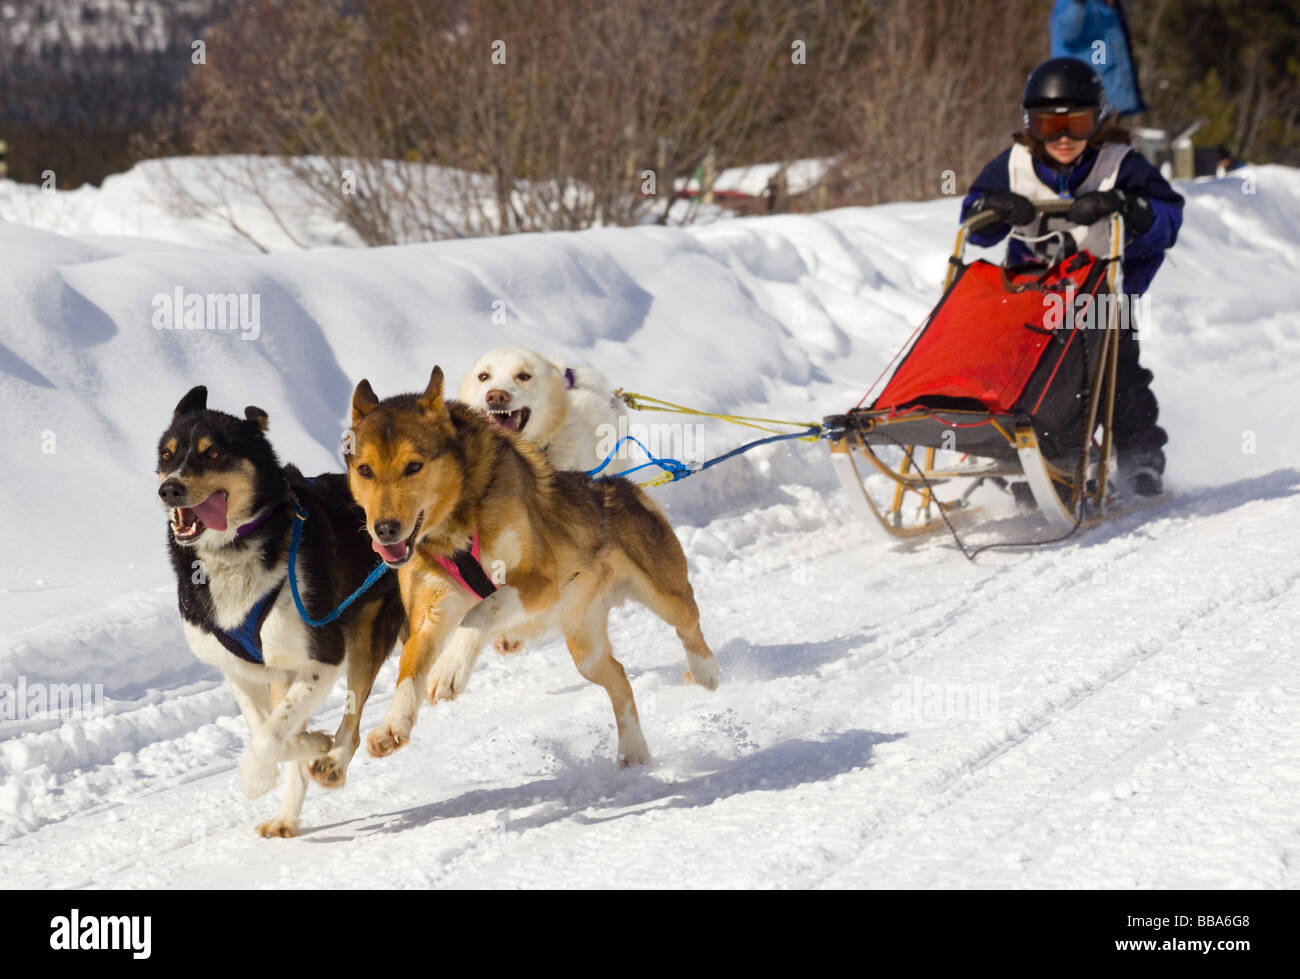 La conduite de l'enfant un chien de traîneau, de l'équipe des Huskies de l'Alaska, le cuivre courriers Twister Dog Sled Race, Territoire du Yukon, Canada Banque D'Images